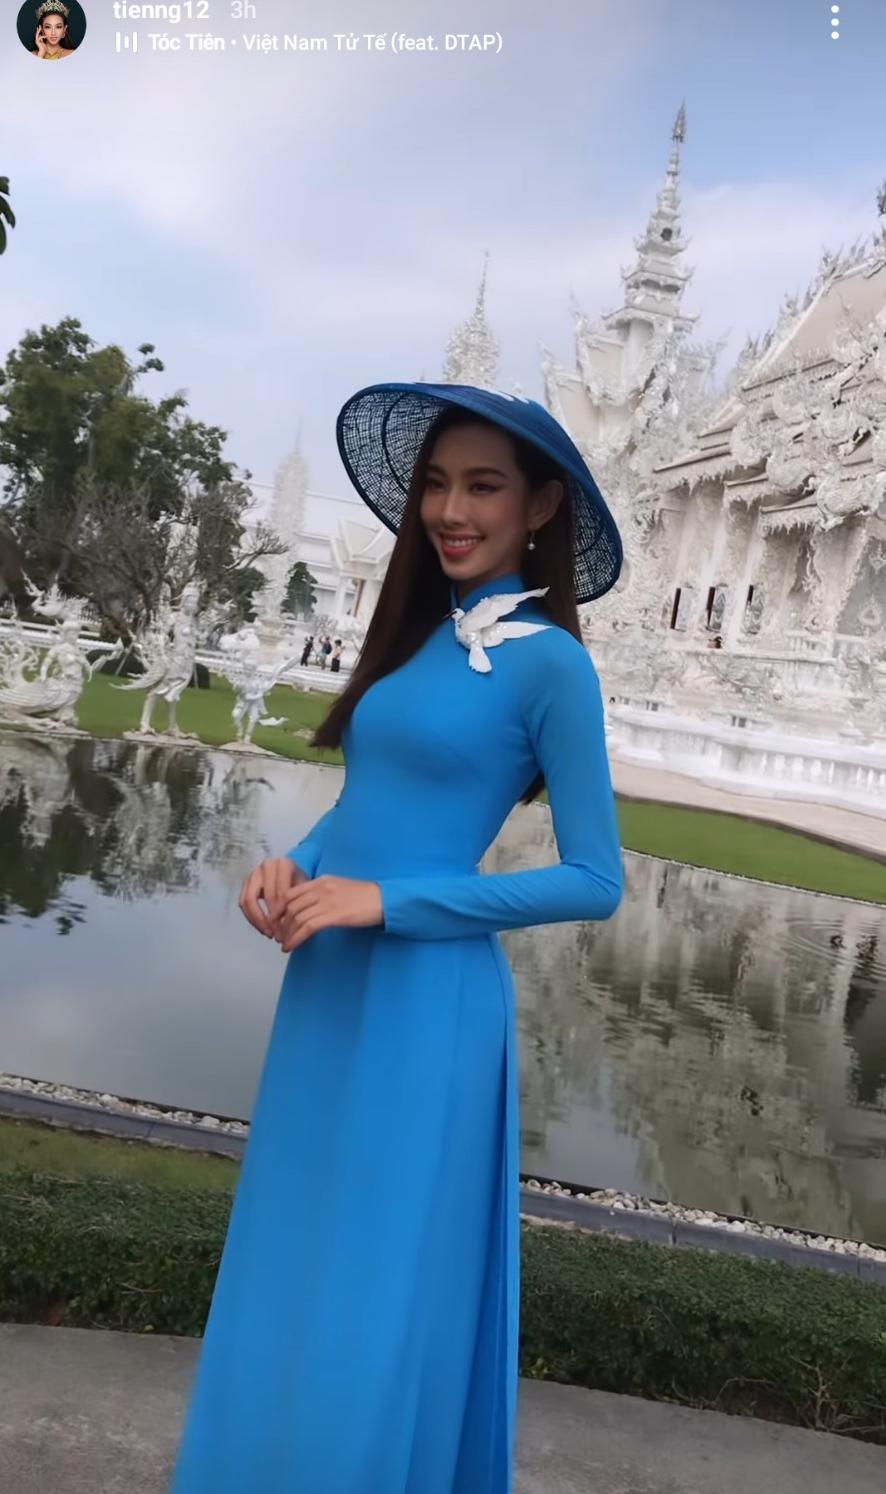 Không còn diện trang phục Thái, Thùy Tiên thả dáng với áo dài Việt khoe nhan sắc tầm quốc tế - Ảnh 3